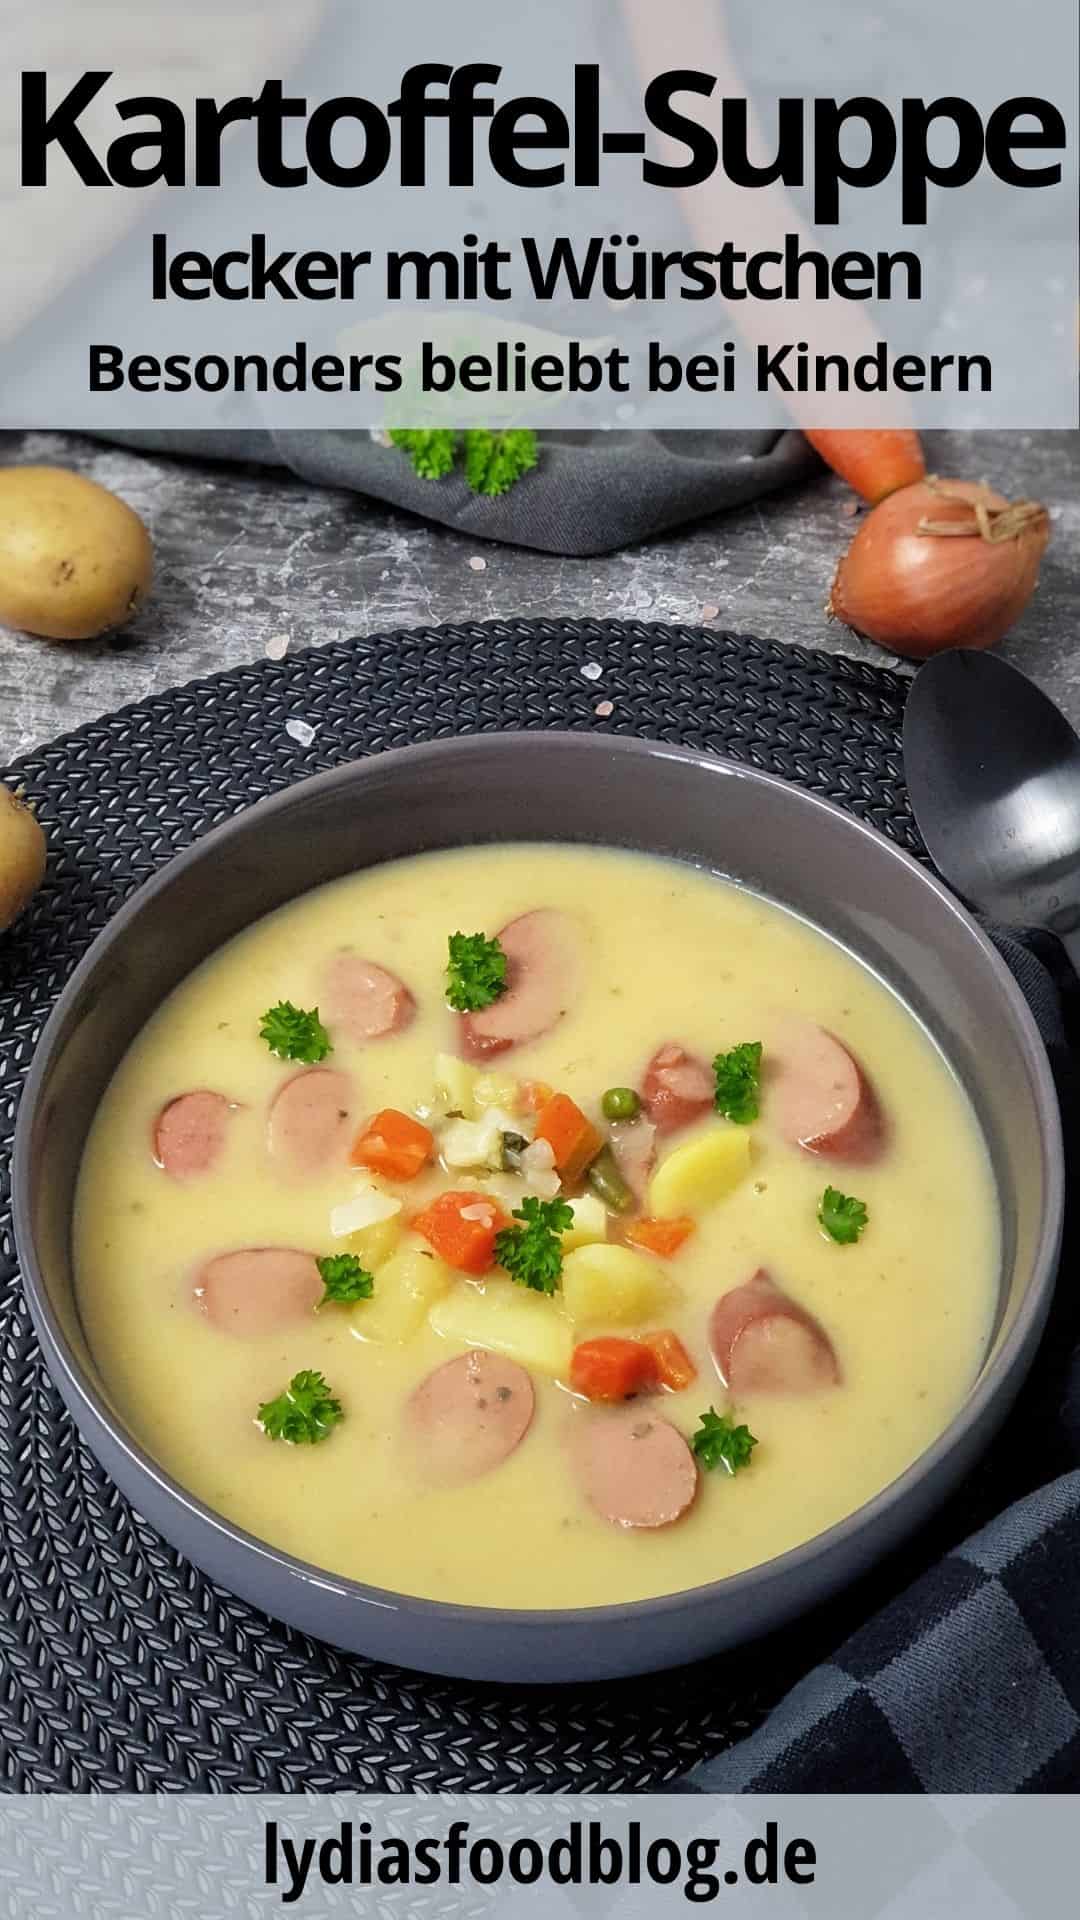 In einer grauen Schale dekorativ angerichtet eine cremige Kartoffelsuppe mit Würstchen sowie Kartoffel und Gemüsestücken. Im Hintergrund auf einem Handtuch liegt ein Baguette, eine Möhre und Kartoffeln.